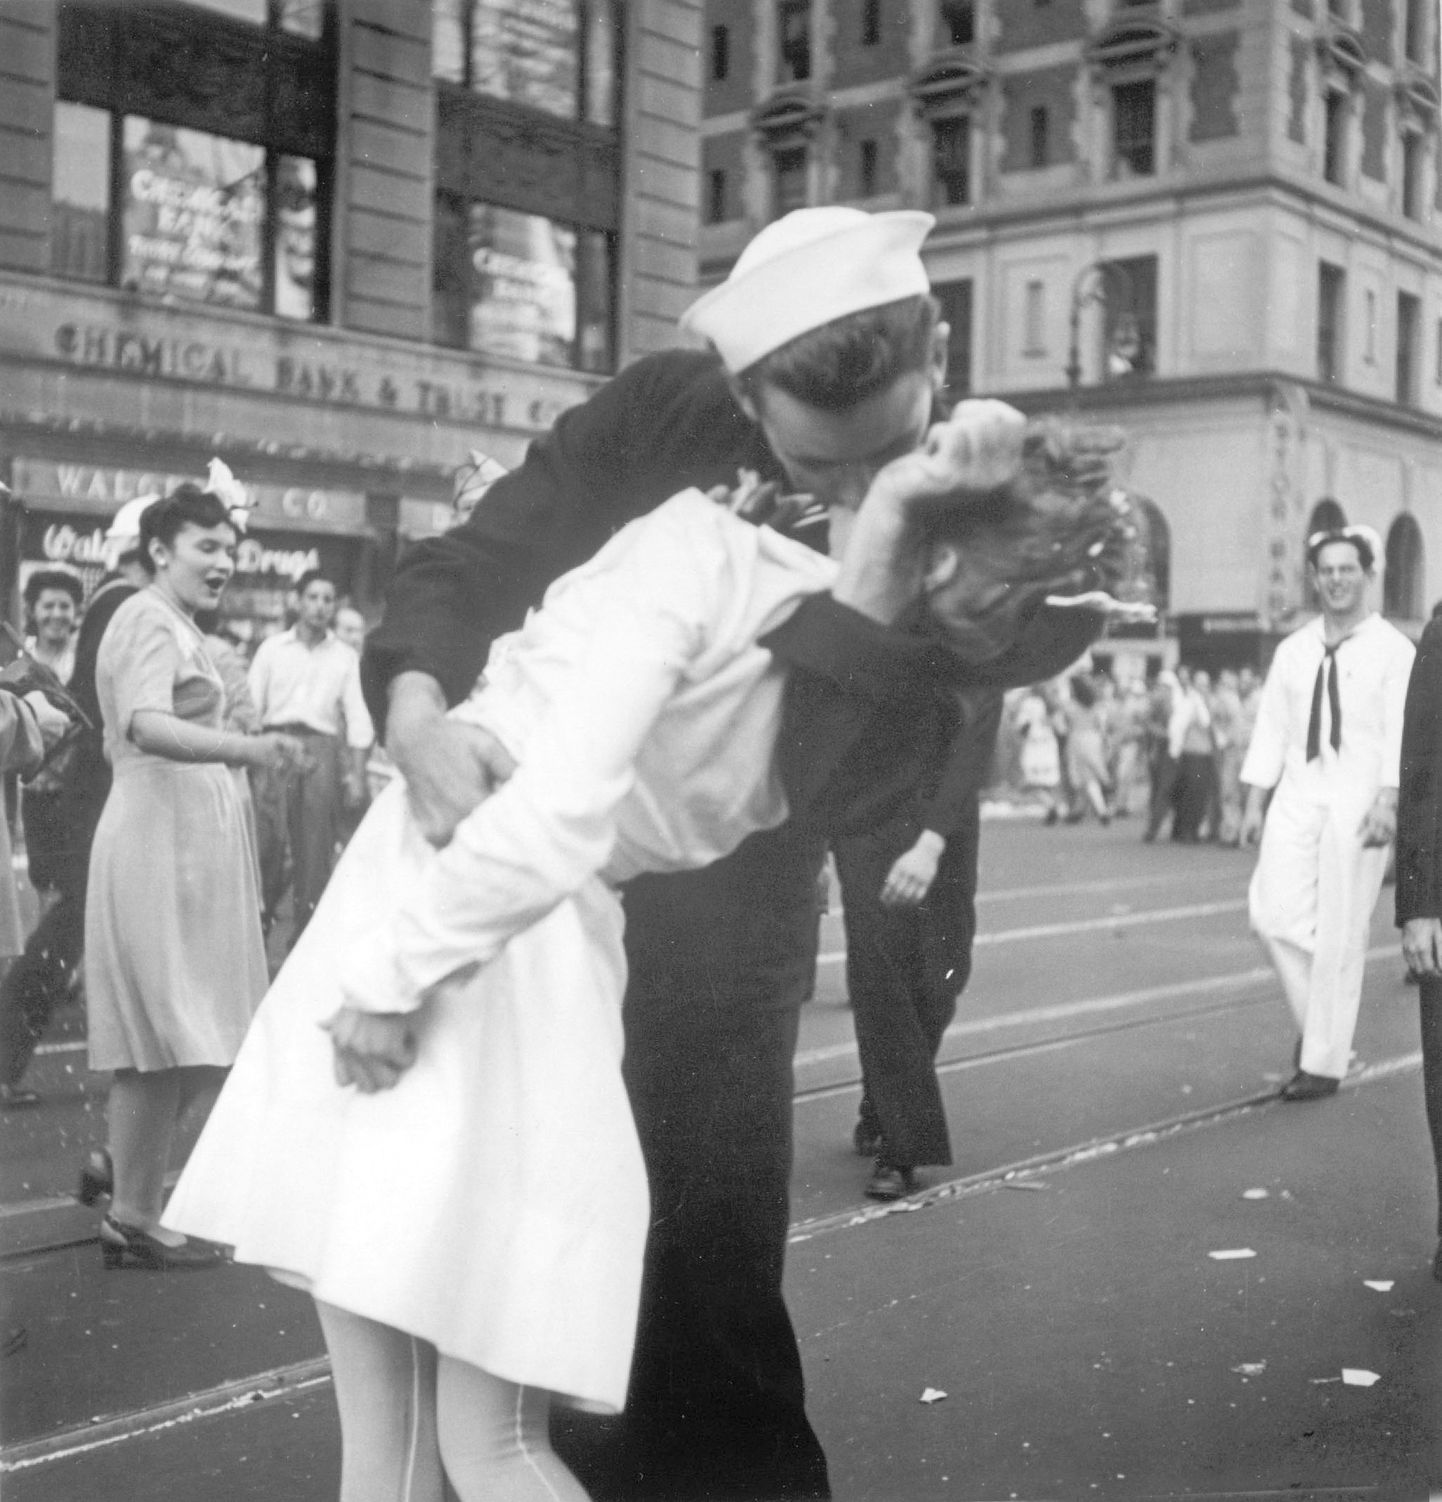 Самый известный поцелуй в истории. Ветеран ВМС США Джордж Мендонса, запечатленный на знаменитой фотографии военных лет «Поцелуй», умер в США на 96-м году жизни. Фото сделано в августе 1945 года.